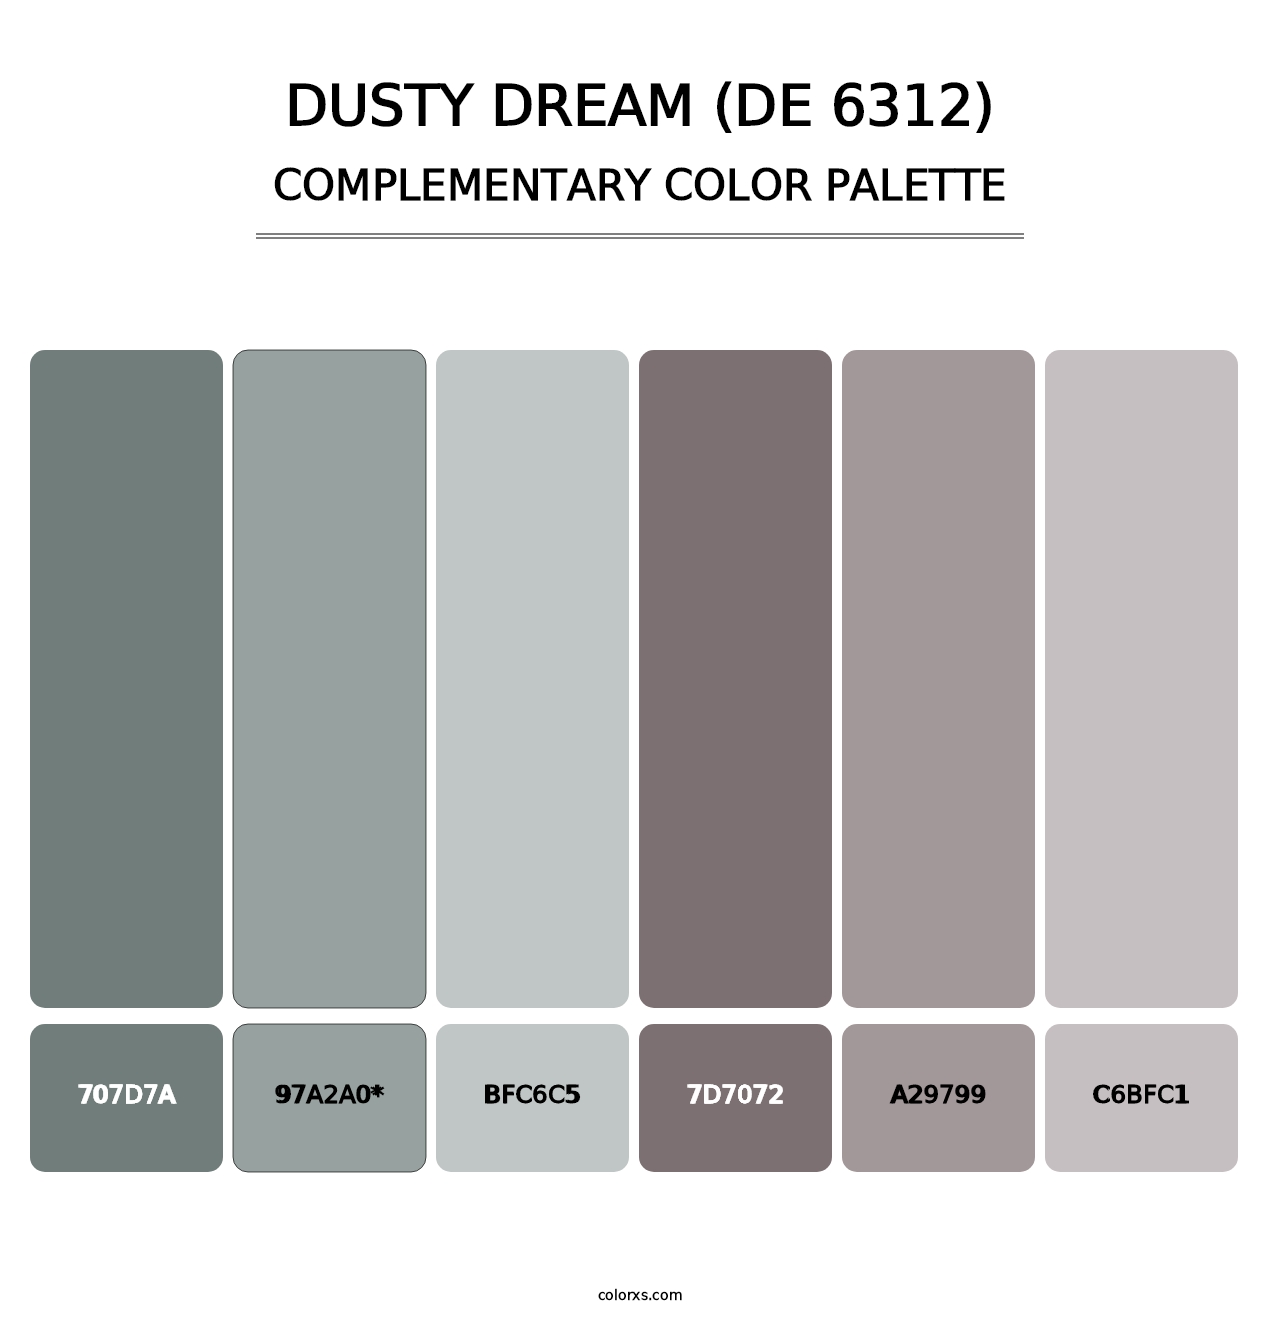 Dusty Dream (DE 6312) - Complementary Color Palette